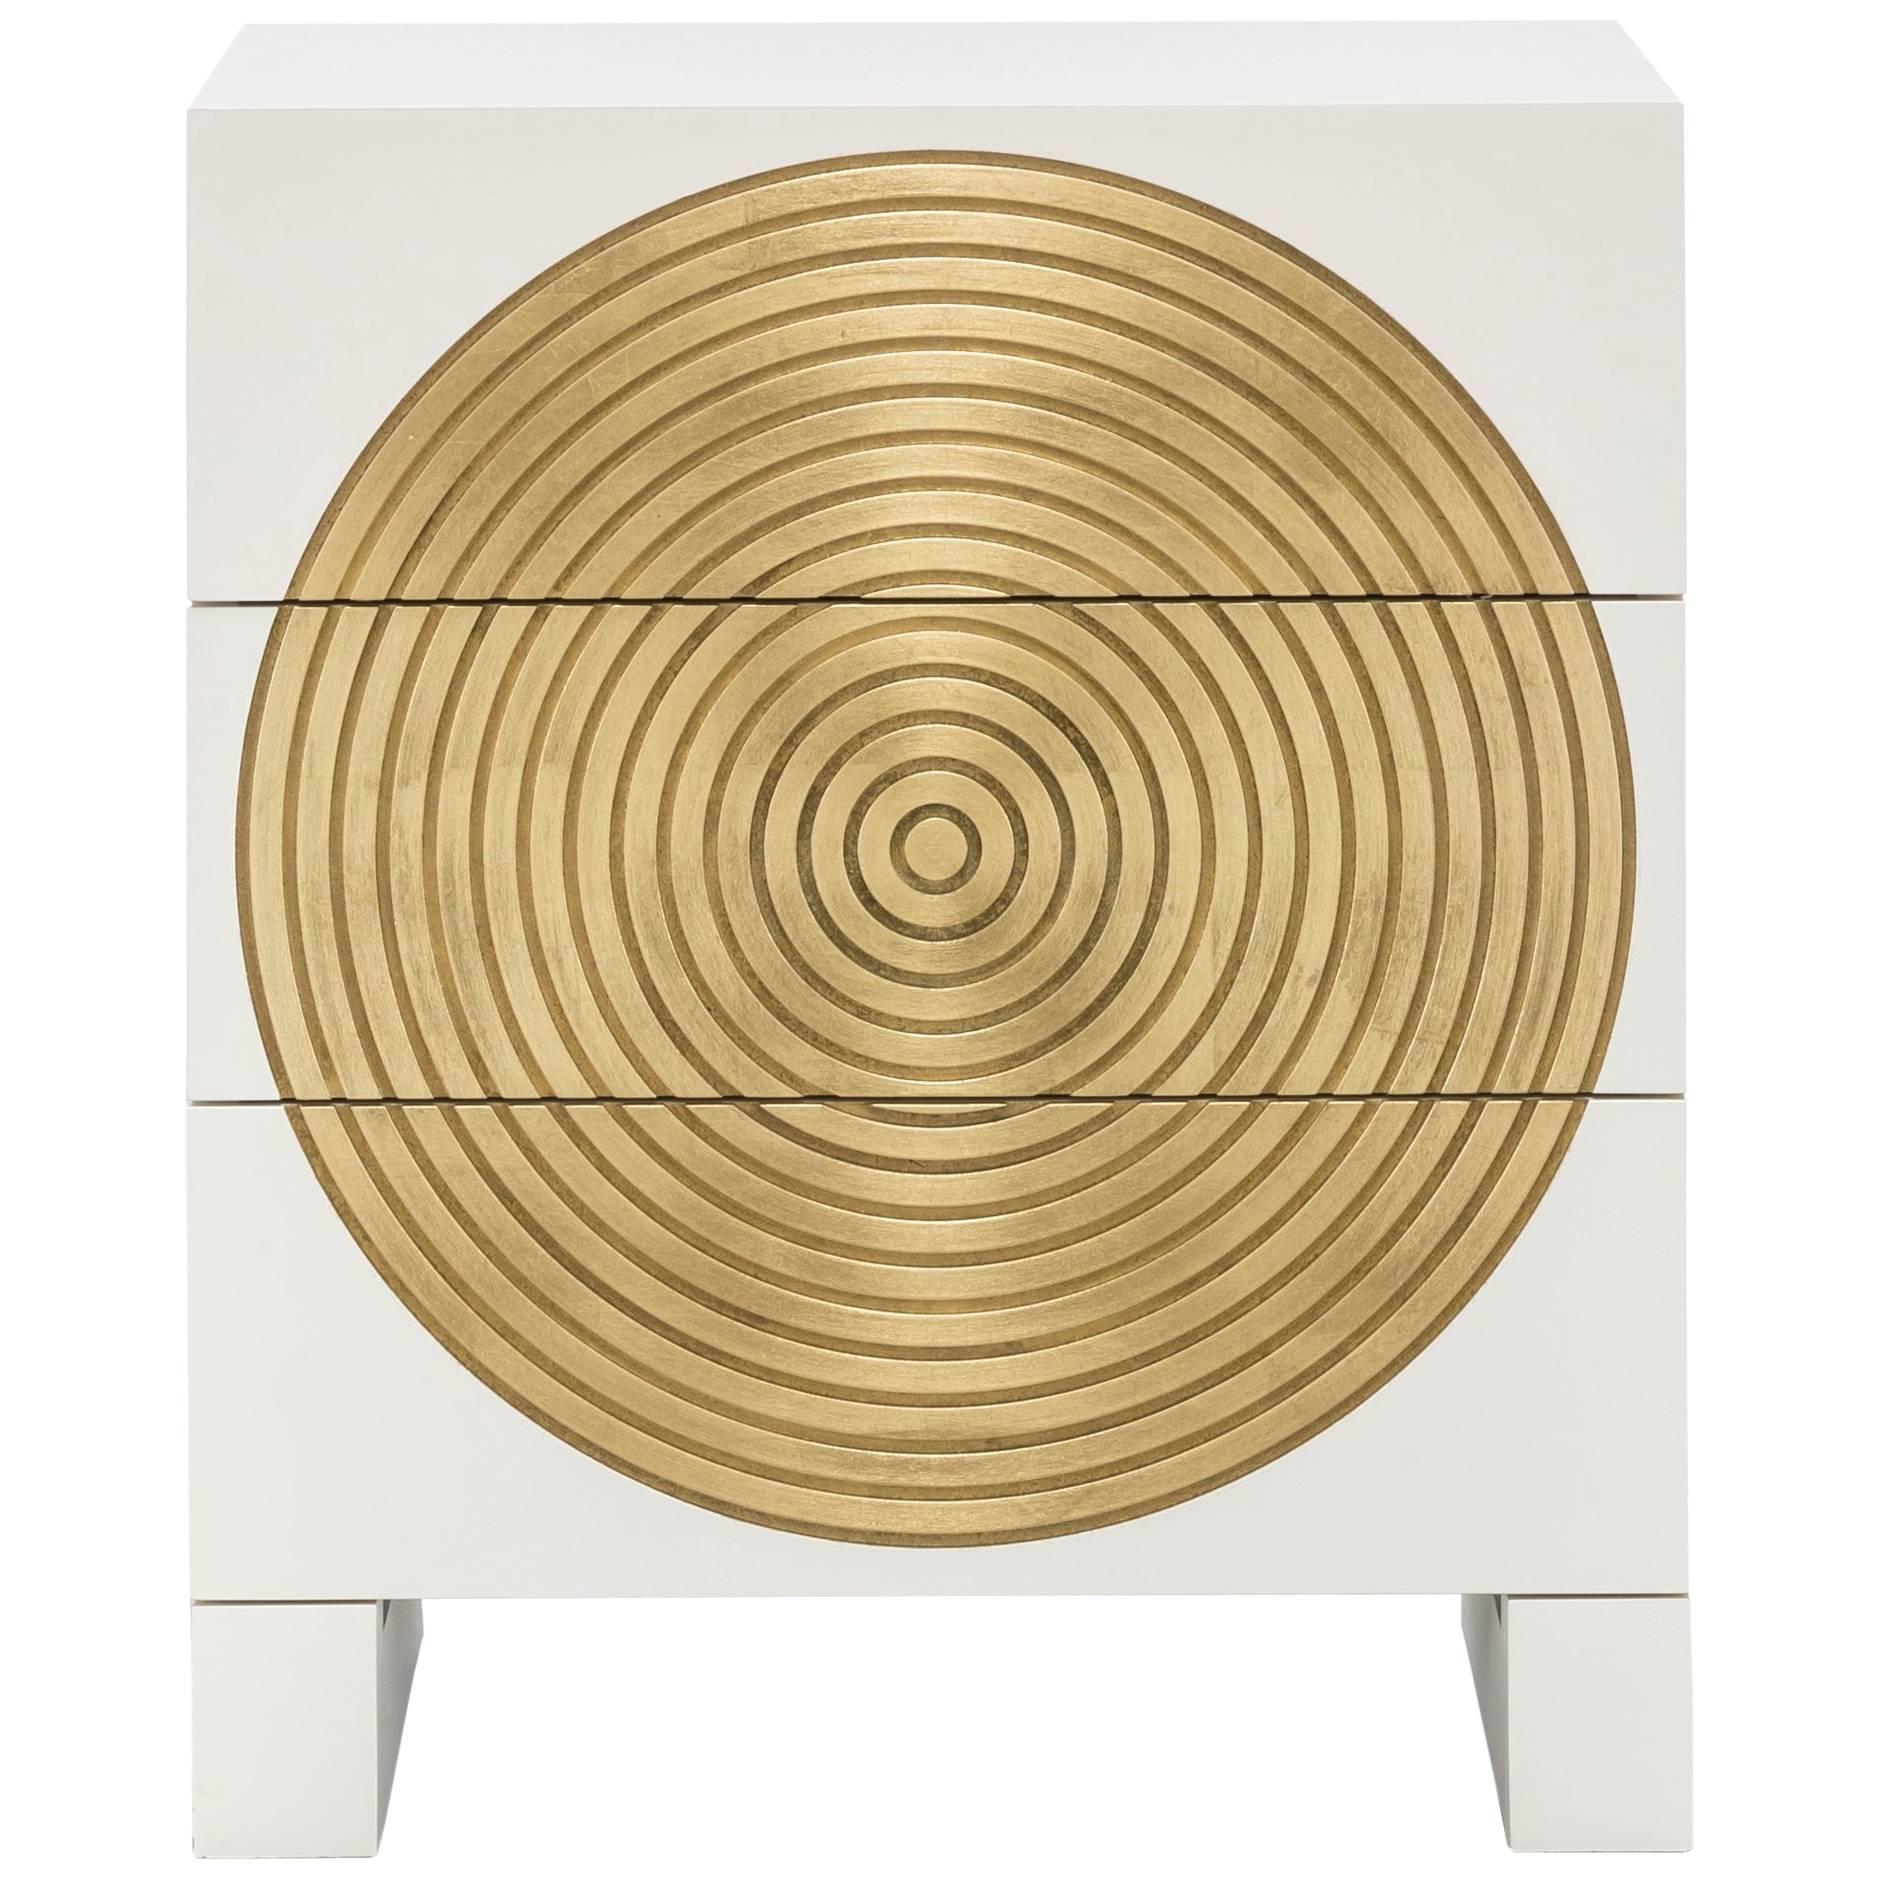 HALO NIGHTSTAND – moderner Nachttisch mit kreisförmigem Design und Blattgolddetails